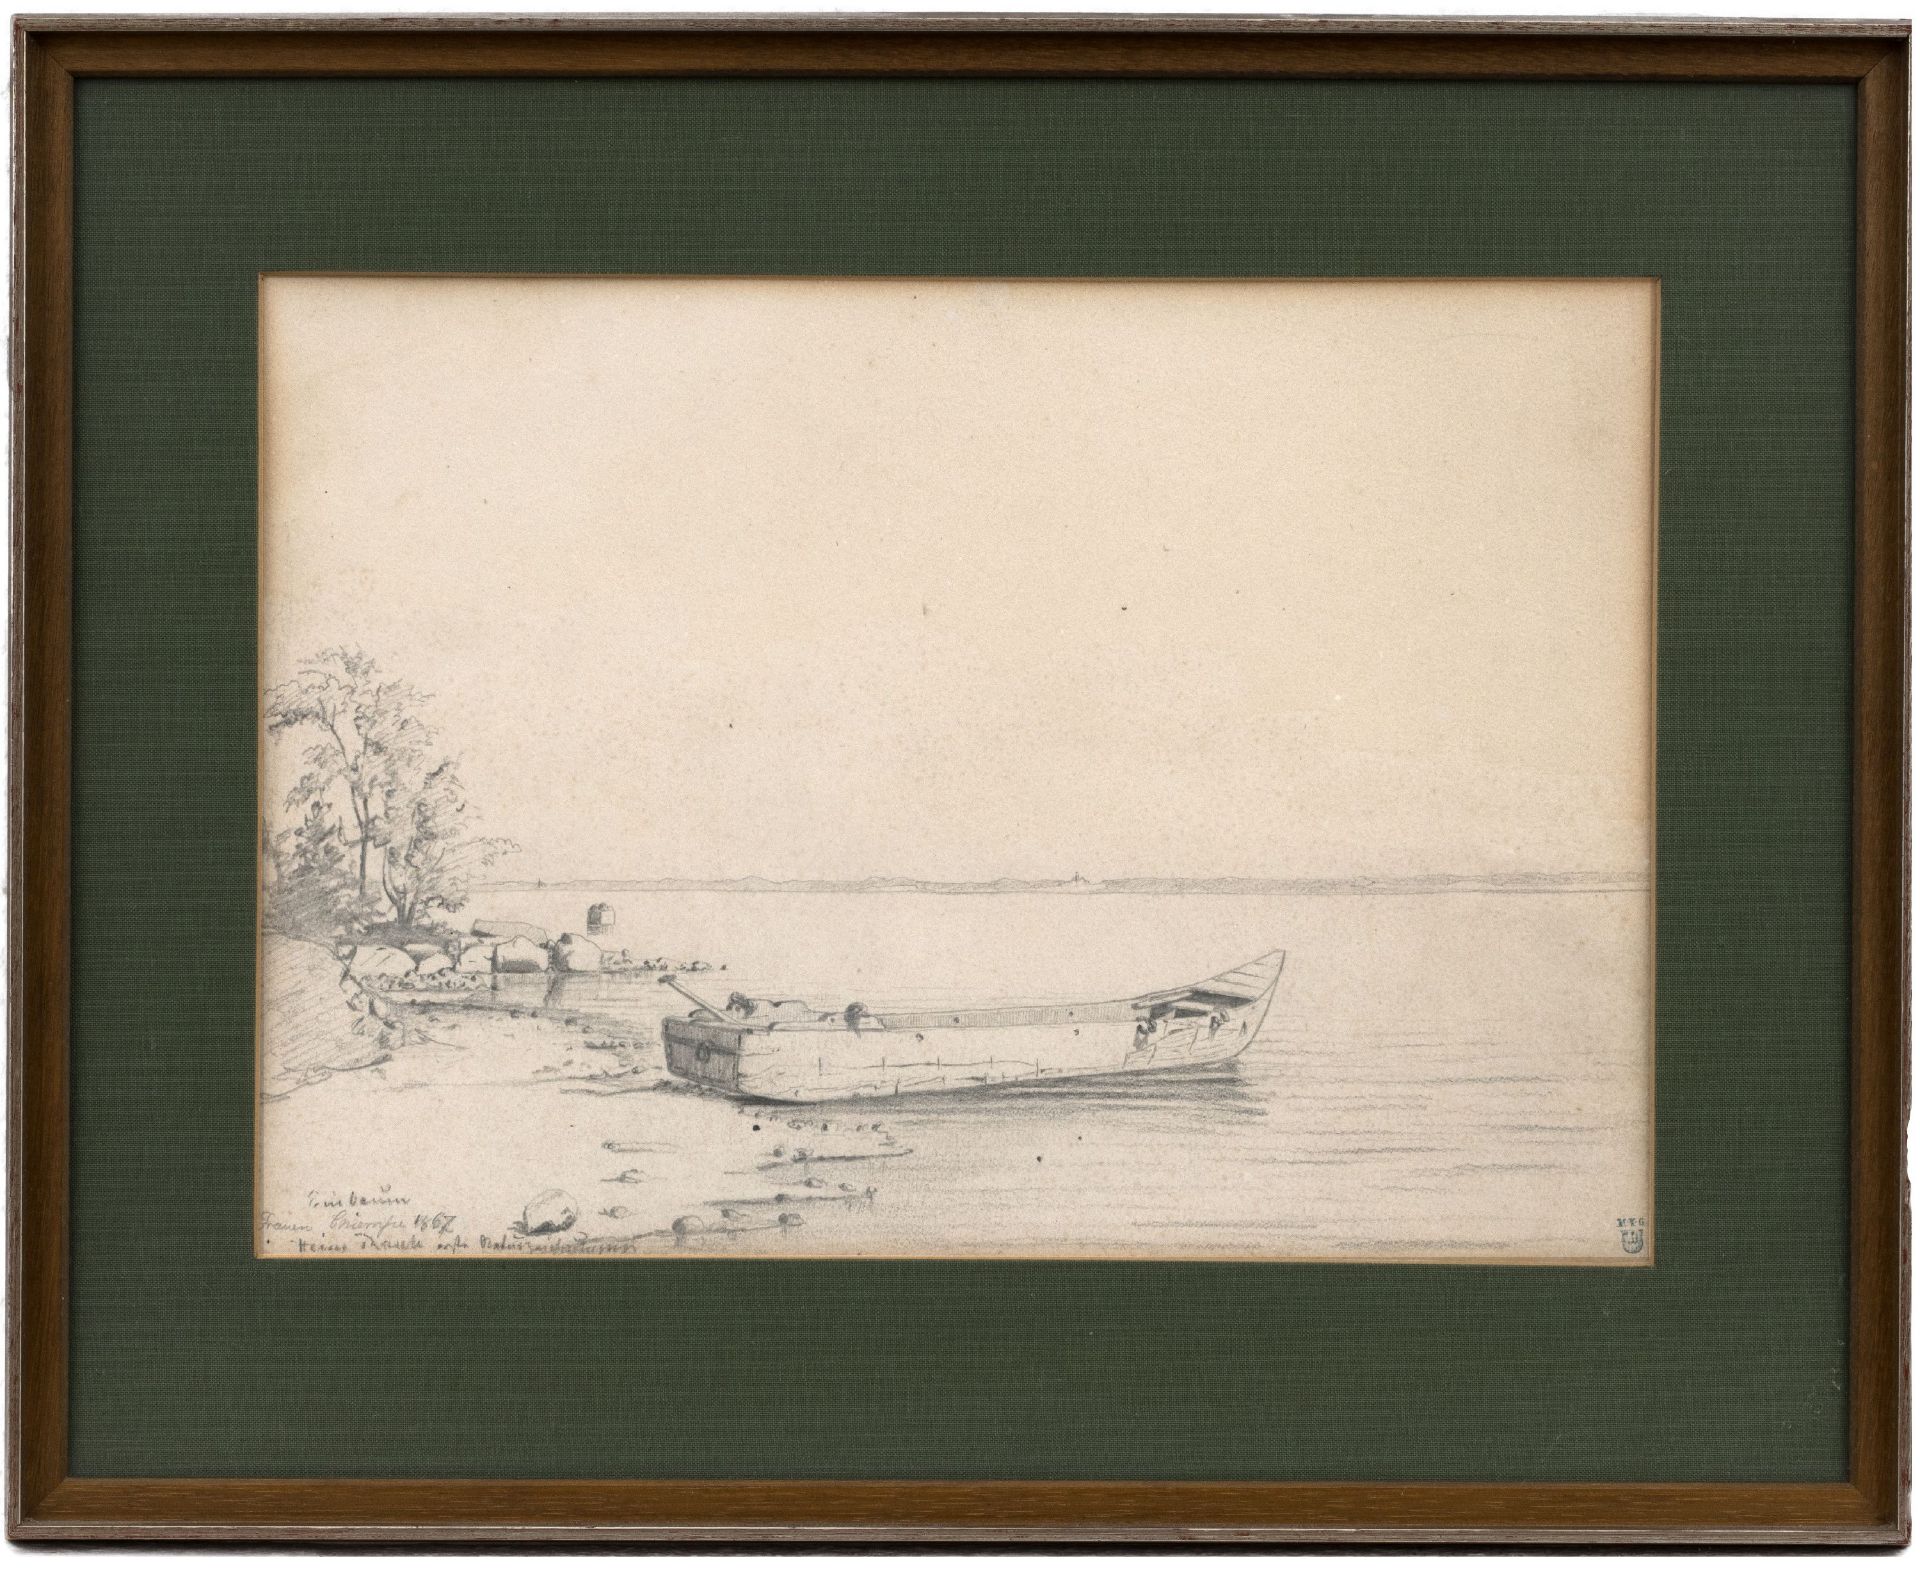 Rasch, Heinrich | 1840 Norburg, Insel Alsen, Dänemark - 1913 Coburg - Image 2 of 2